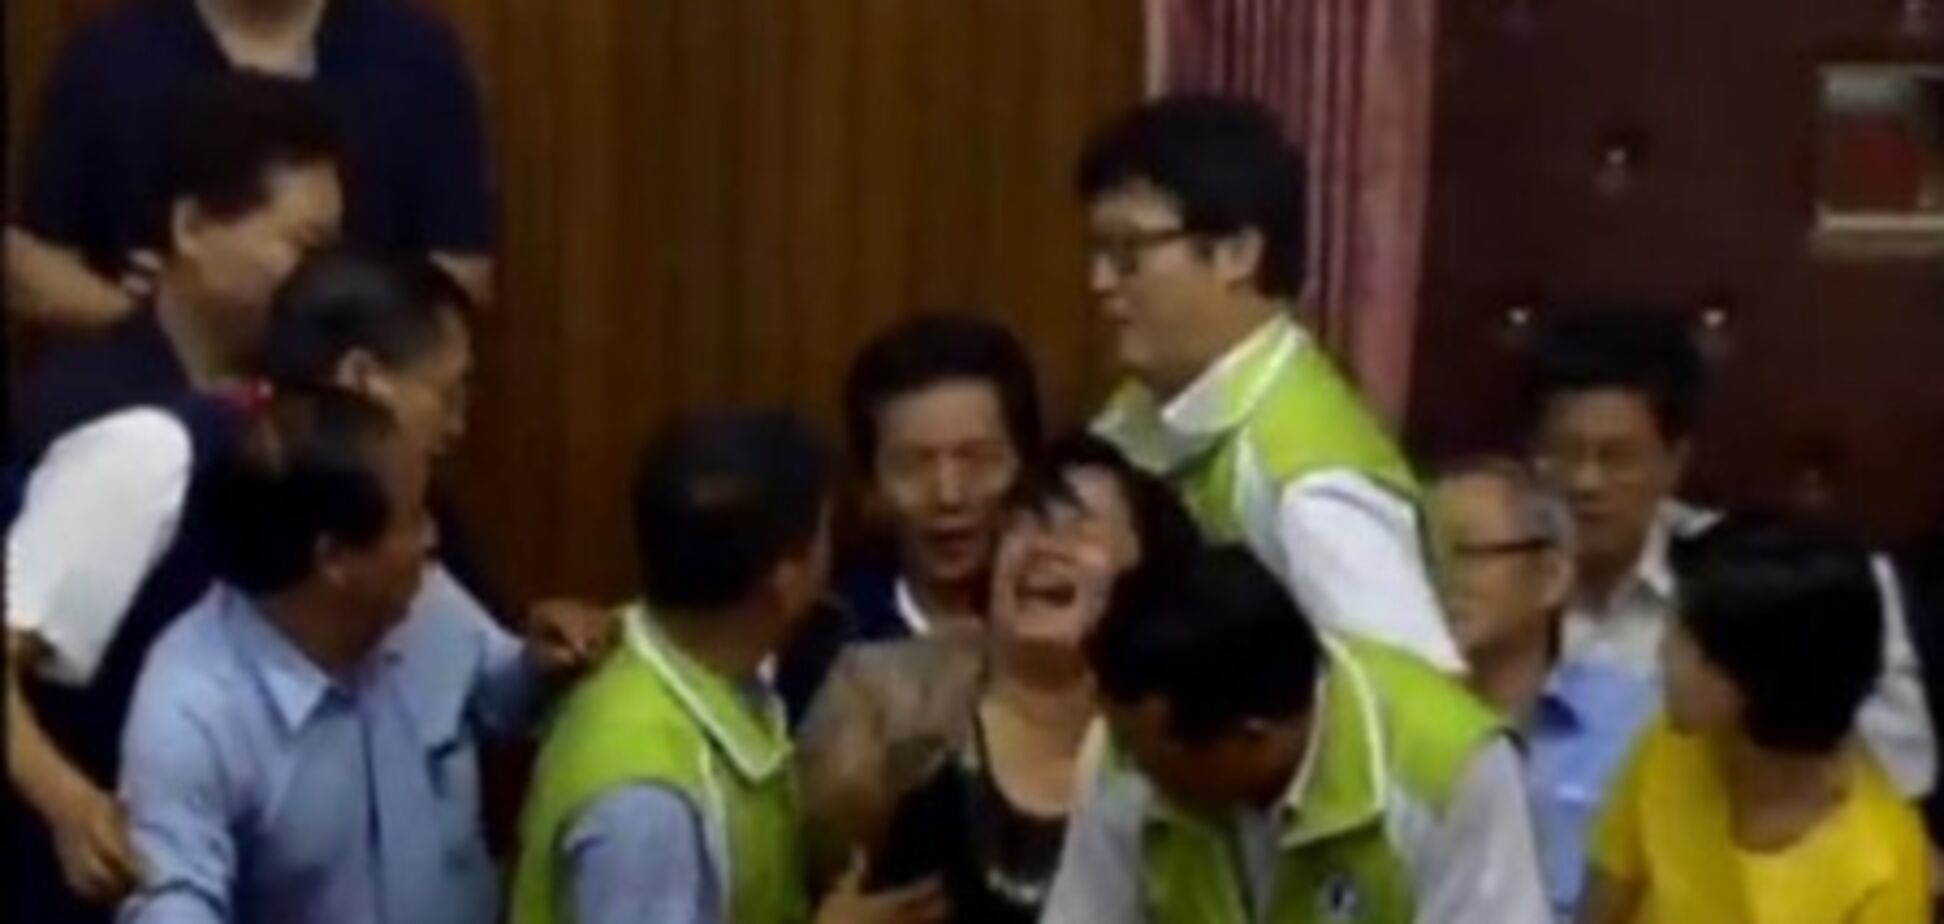 Бійка в парламенті Тайваню: жінки виривали волосся один одному, 26 червня 2013